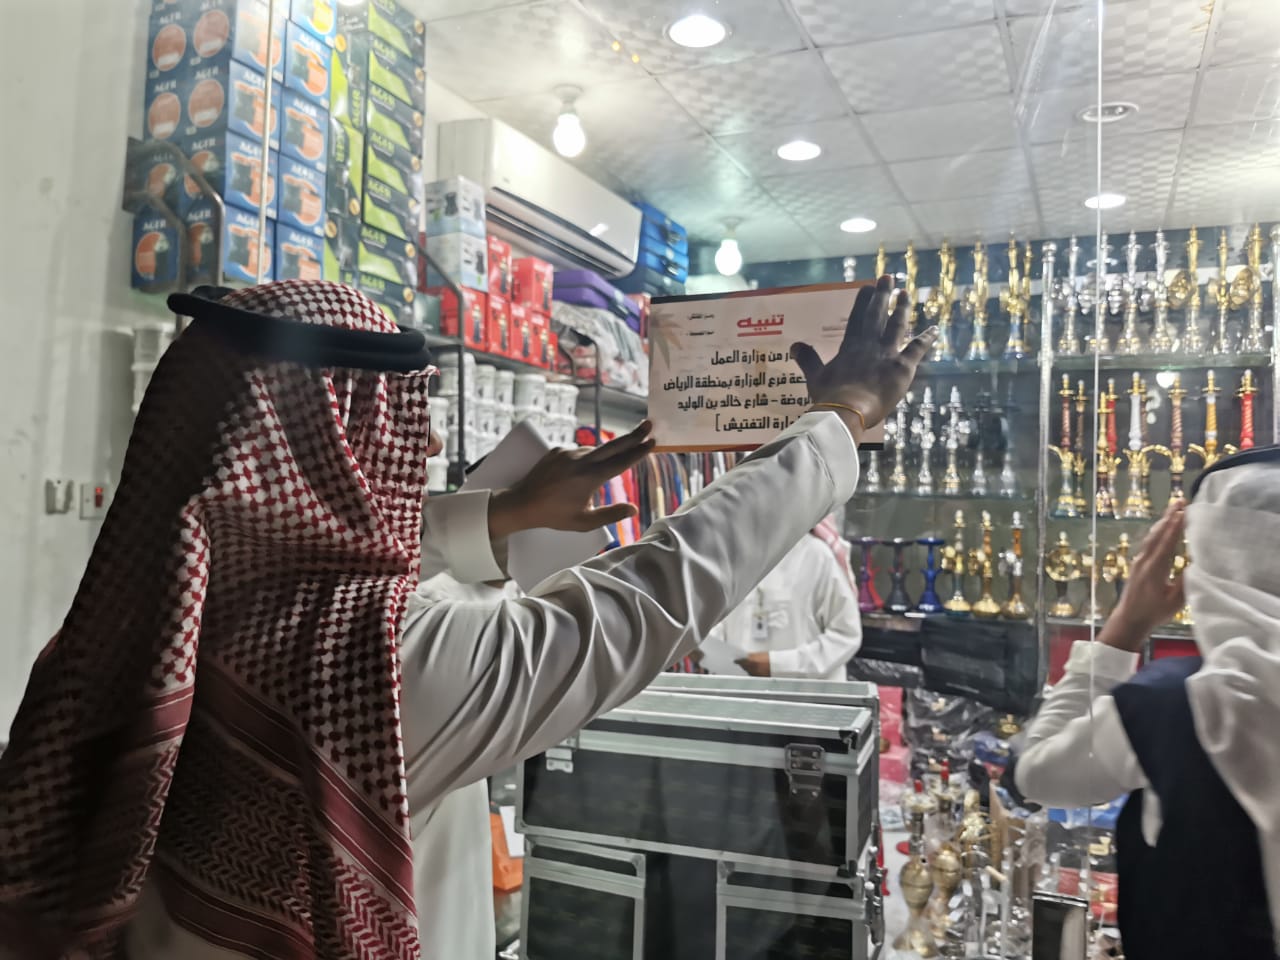 رصد مخالفات بالجملة على مقاهي الشيشة بشرق الرياض صحيفة الوئام الالكترونية